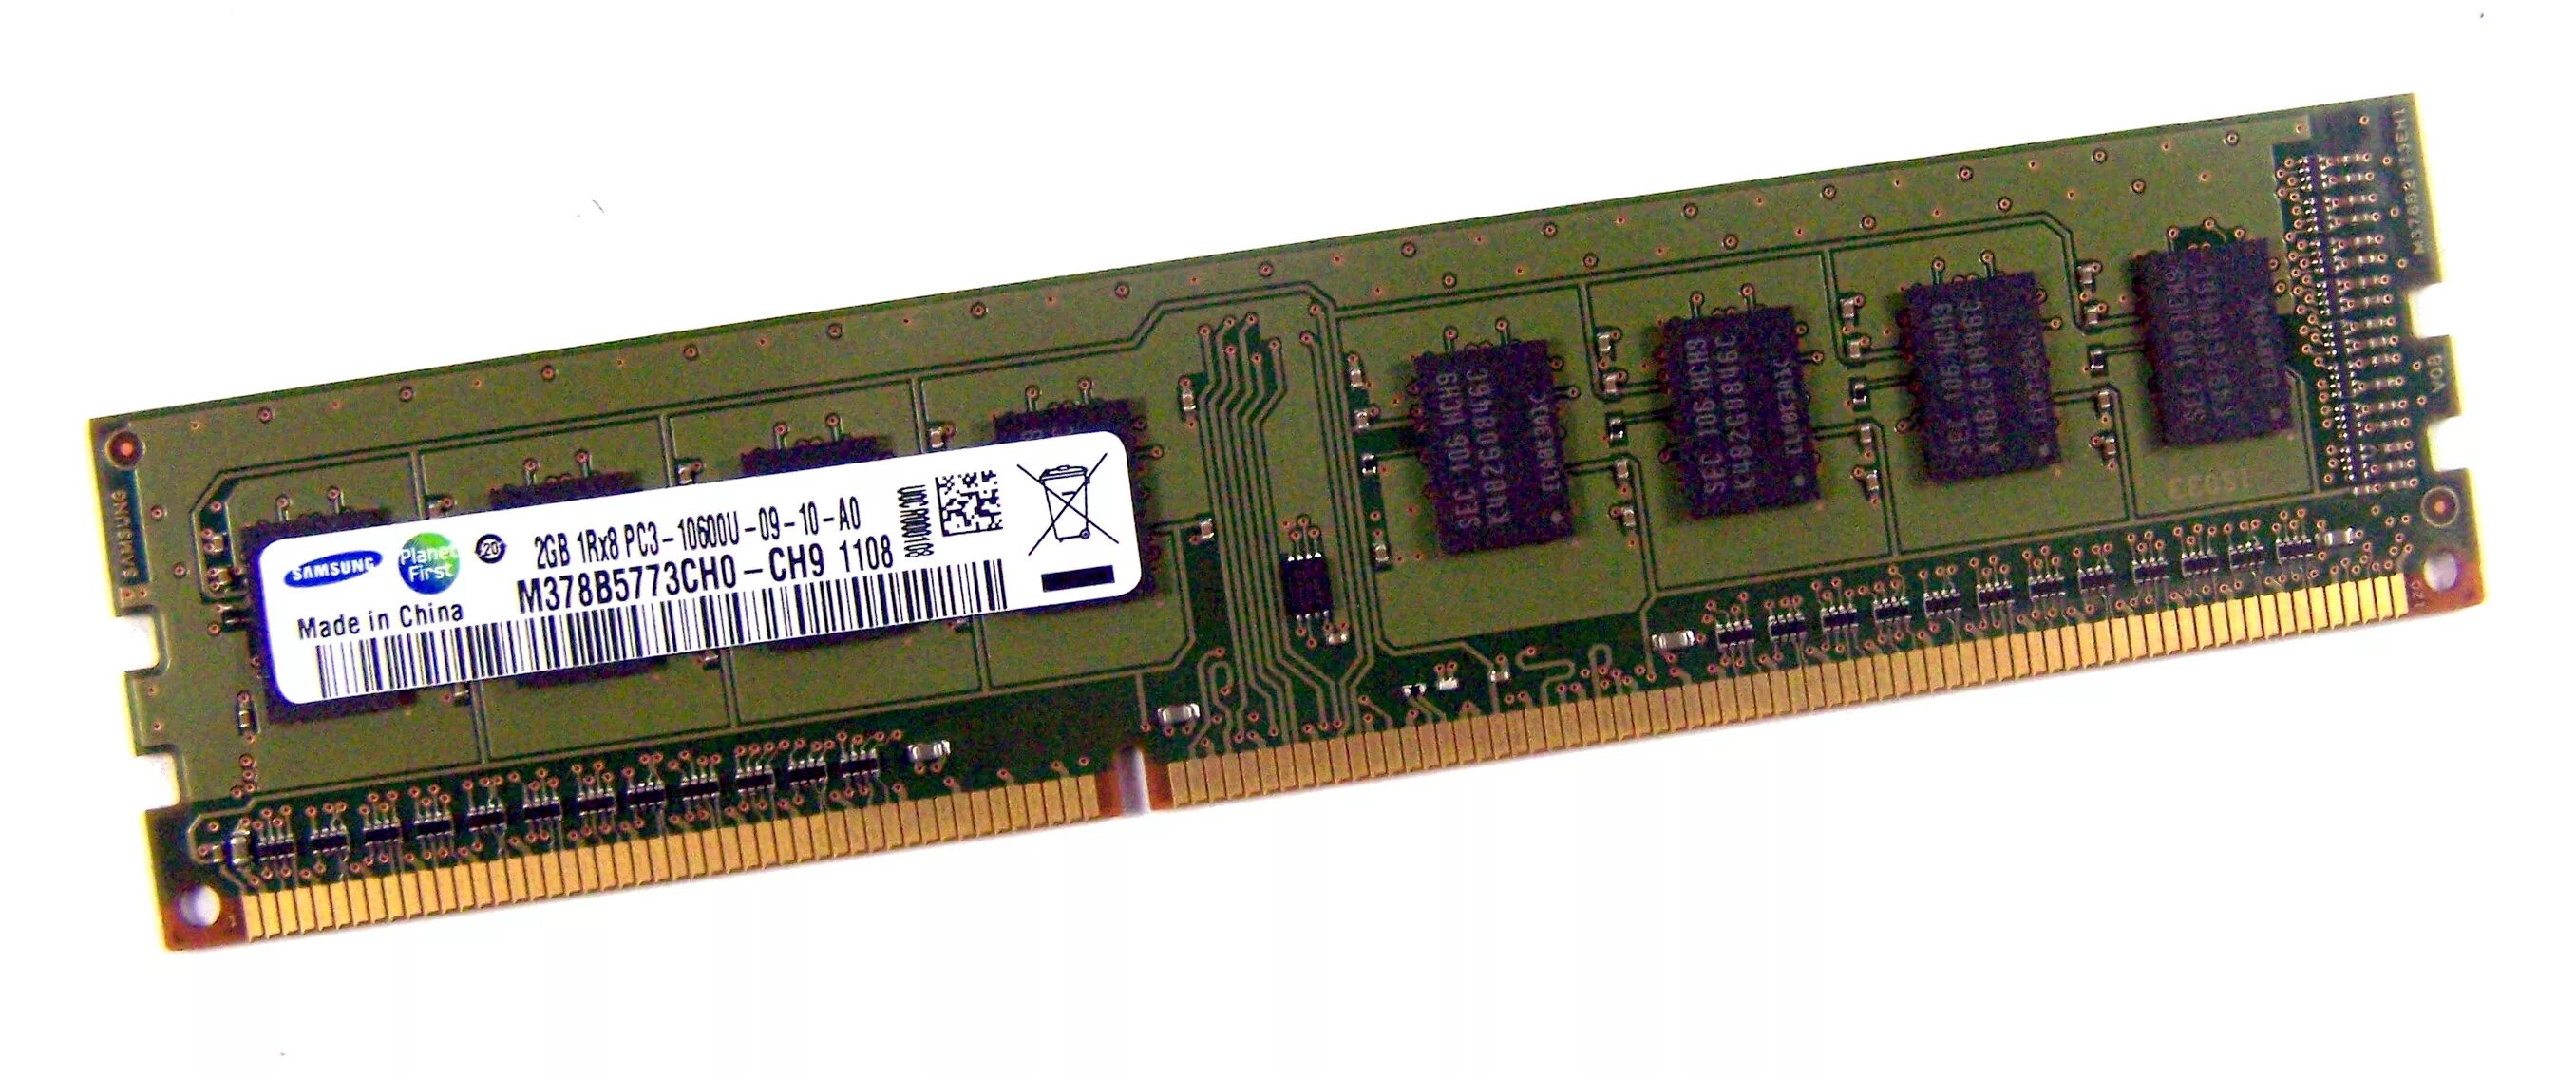 8 8 8 20 оперативная память. Оперативная память ddr3 8gb Samsung. Ddr3 Samsung 2 GB 1333. Оперативная память ddr3 Samsung 10600 2gb. Оперативная память Samsung ddr3 2r 1333.